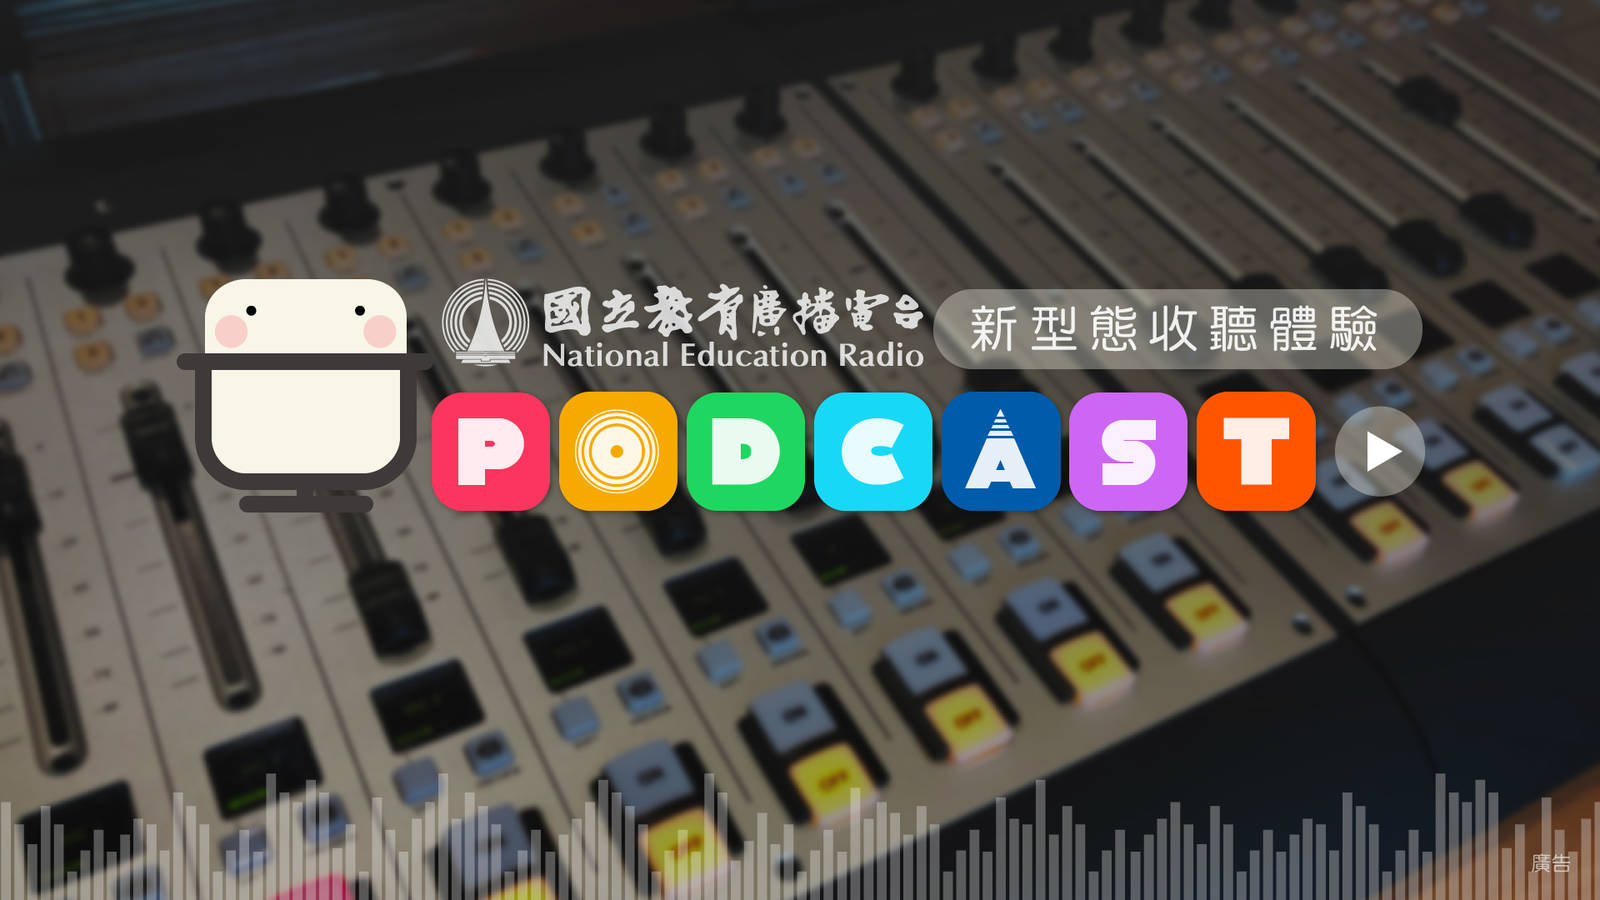 教育電臺Podcast新一季上線!